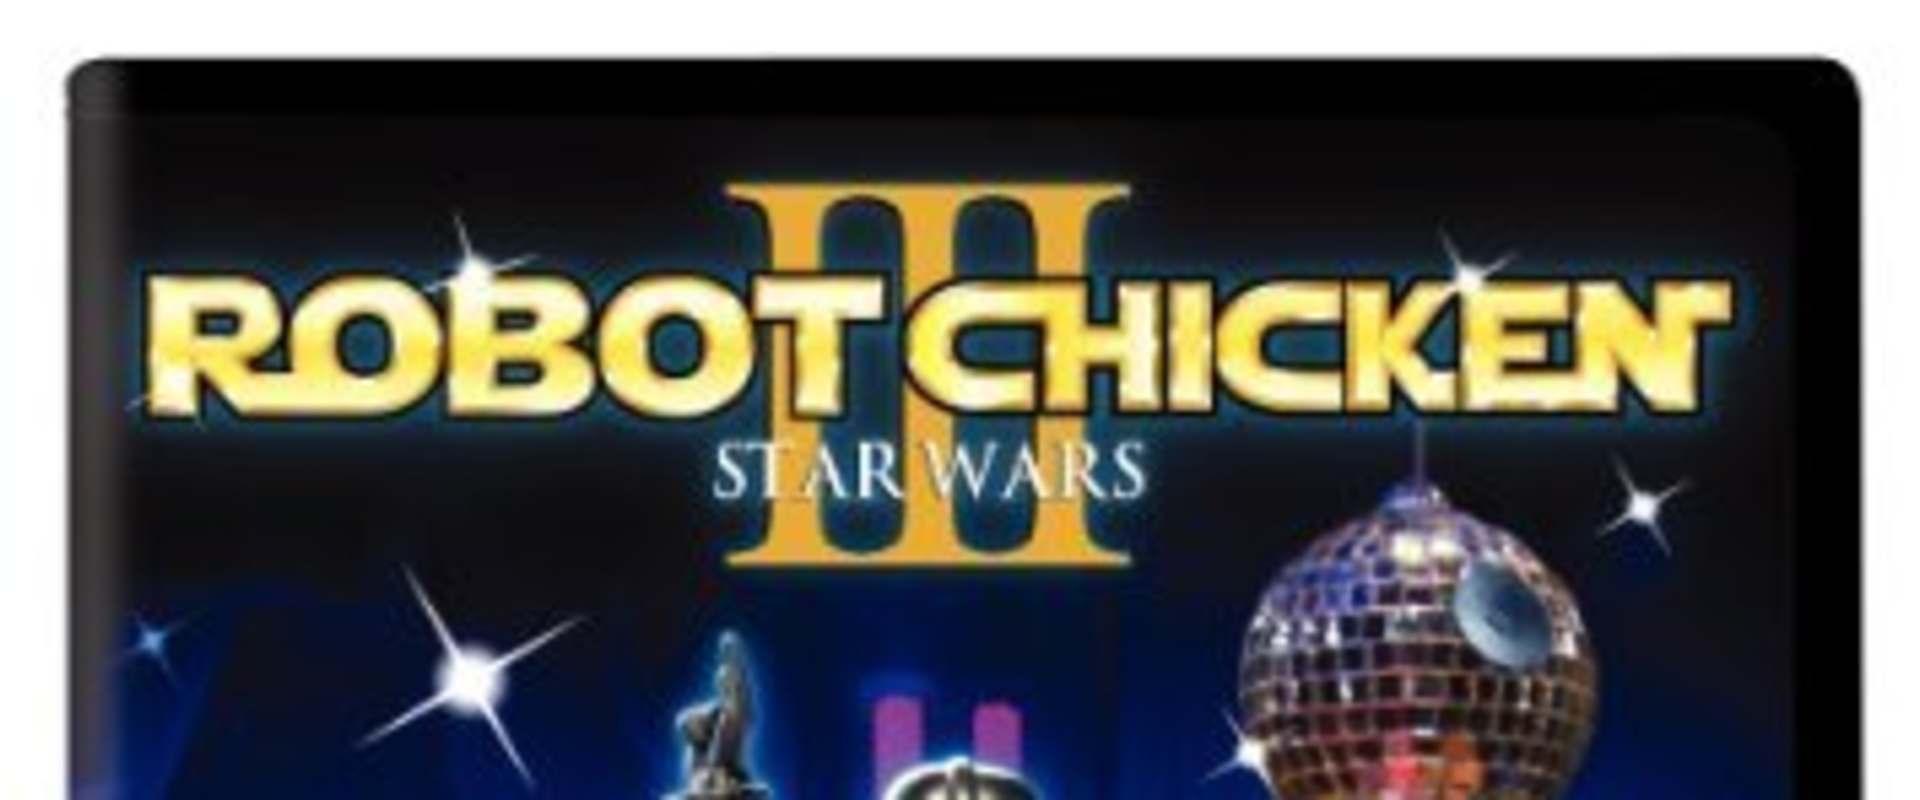 Robot Chicken: Star Wars background 1